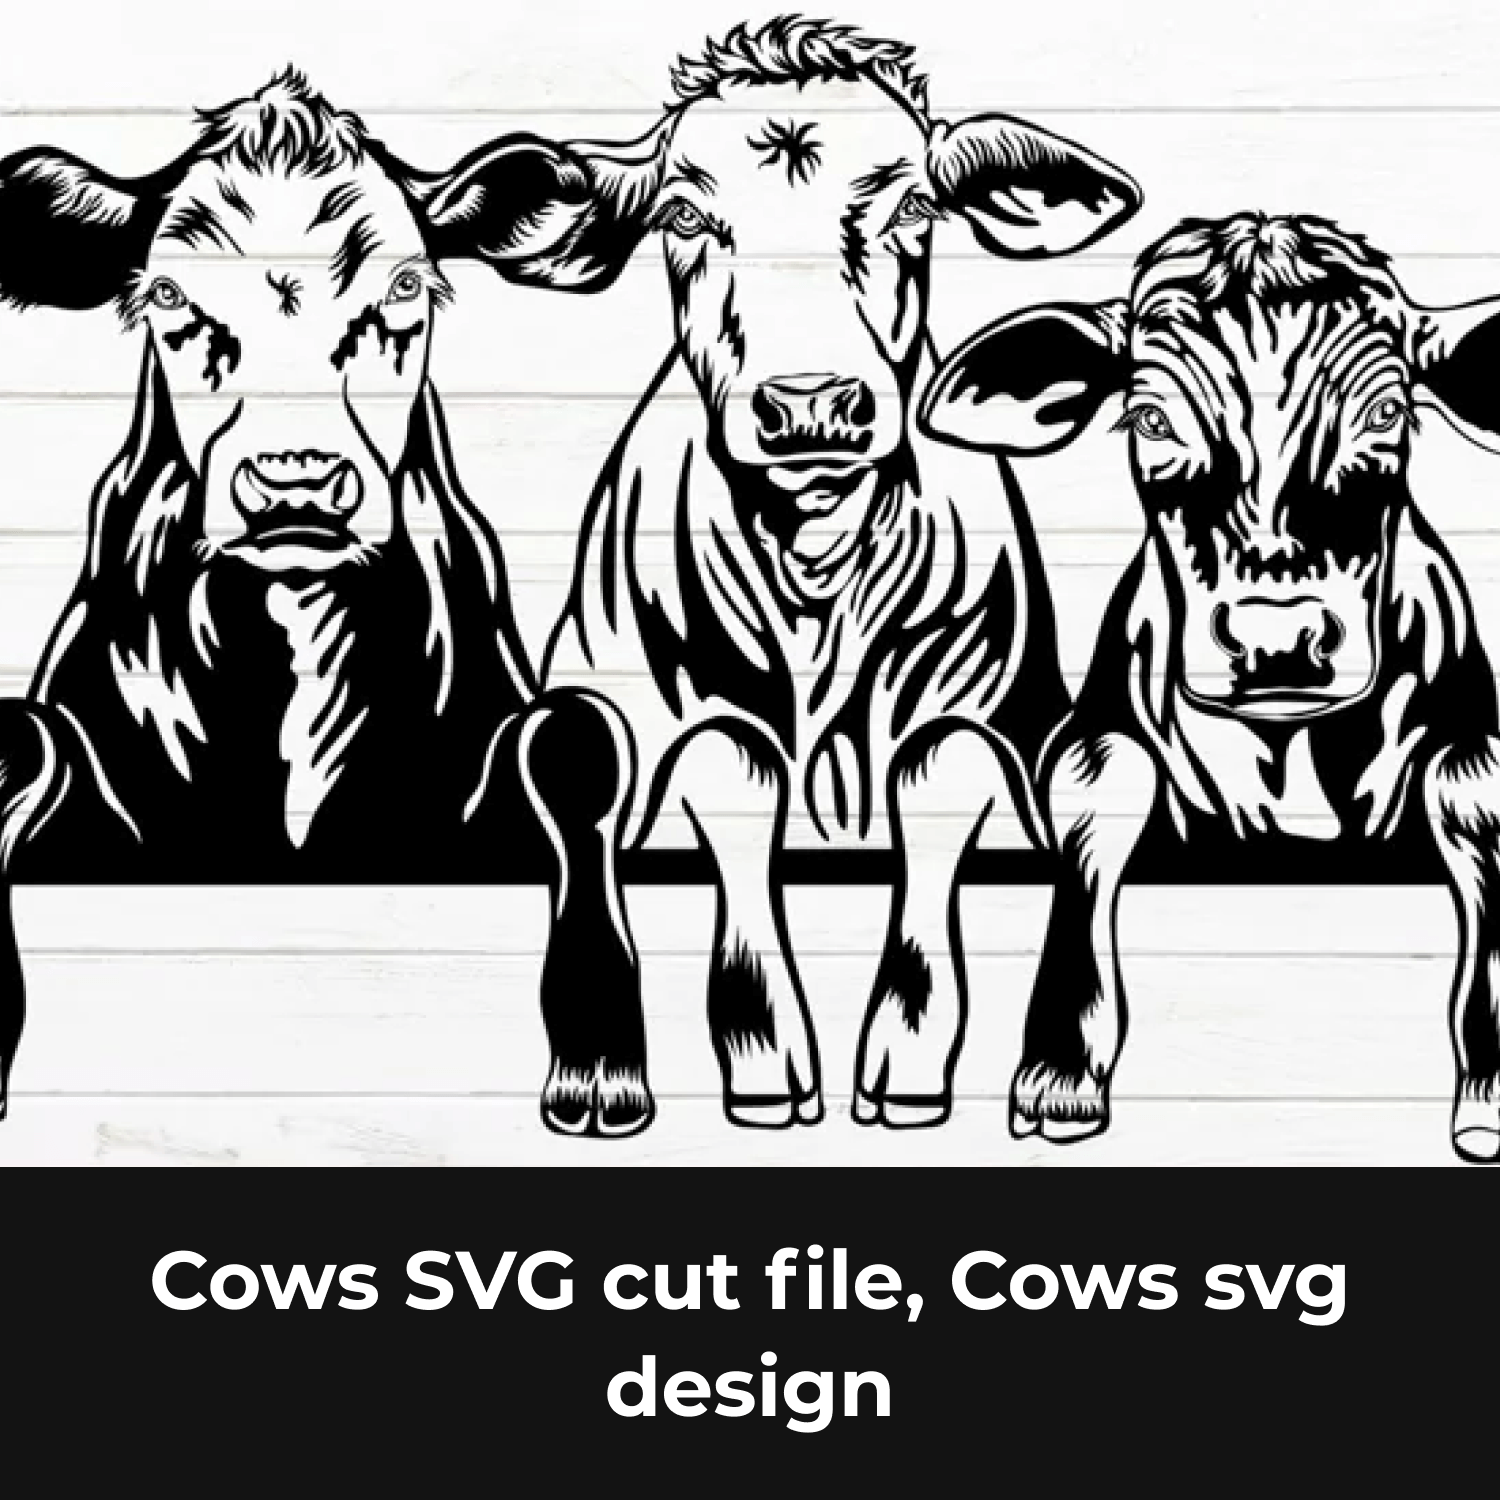 Cows svg cut file.